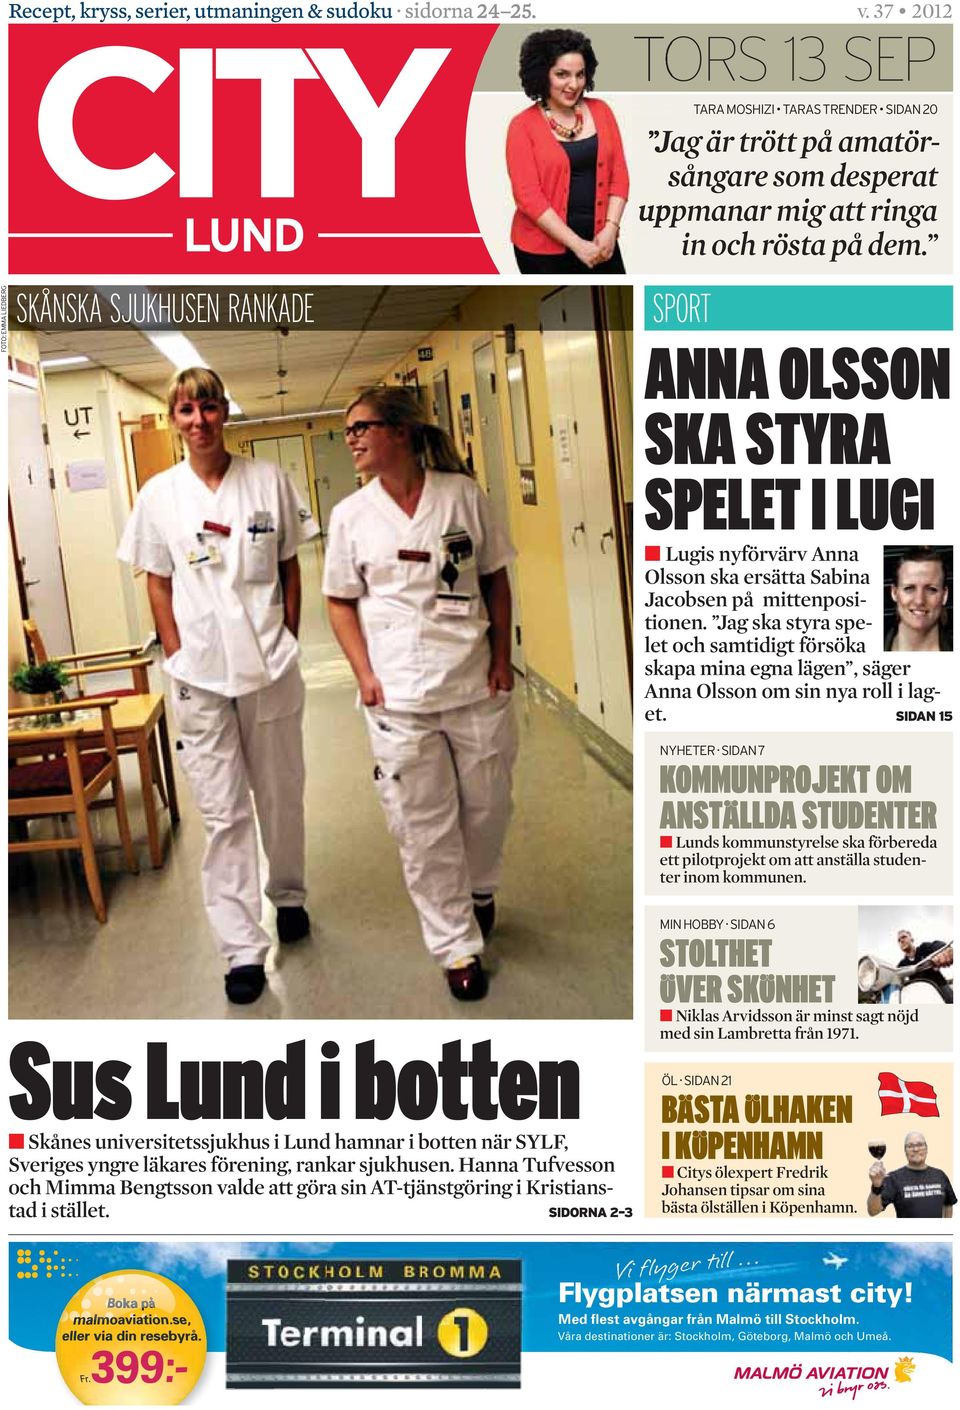 SPORT ANNA OLSSON SKA STYRA SPELET I LUGI Lugis nyförvärv Anna Olsson ska ersätta Sabina Jacobsen på mittenpositionen.